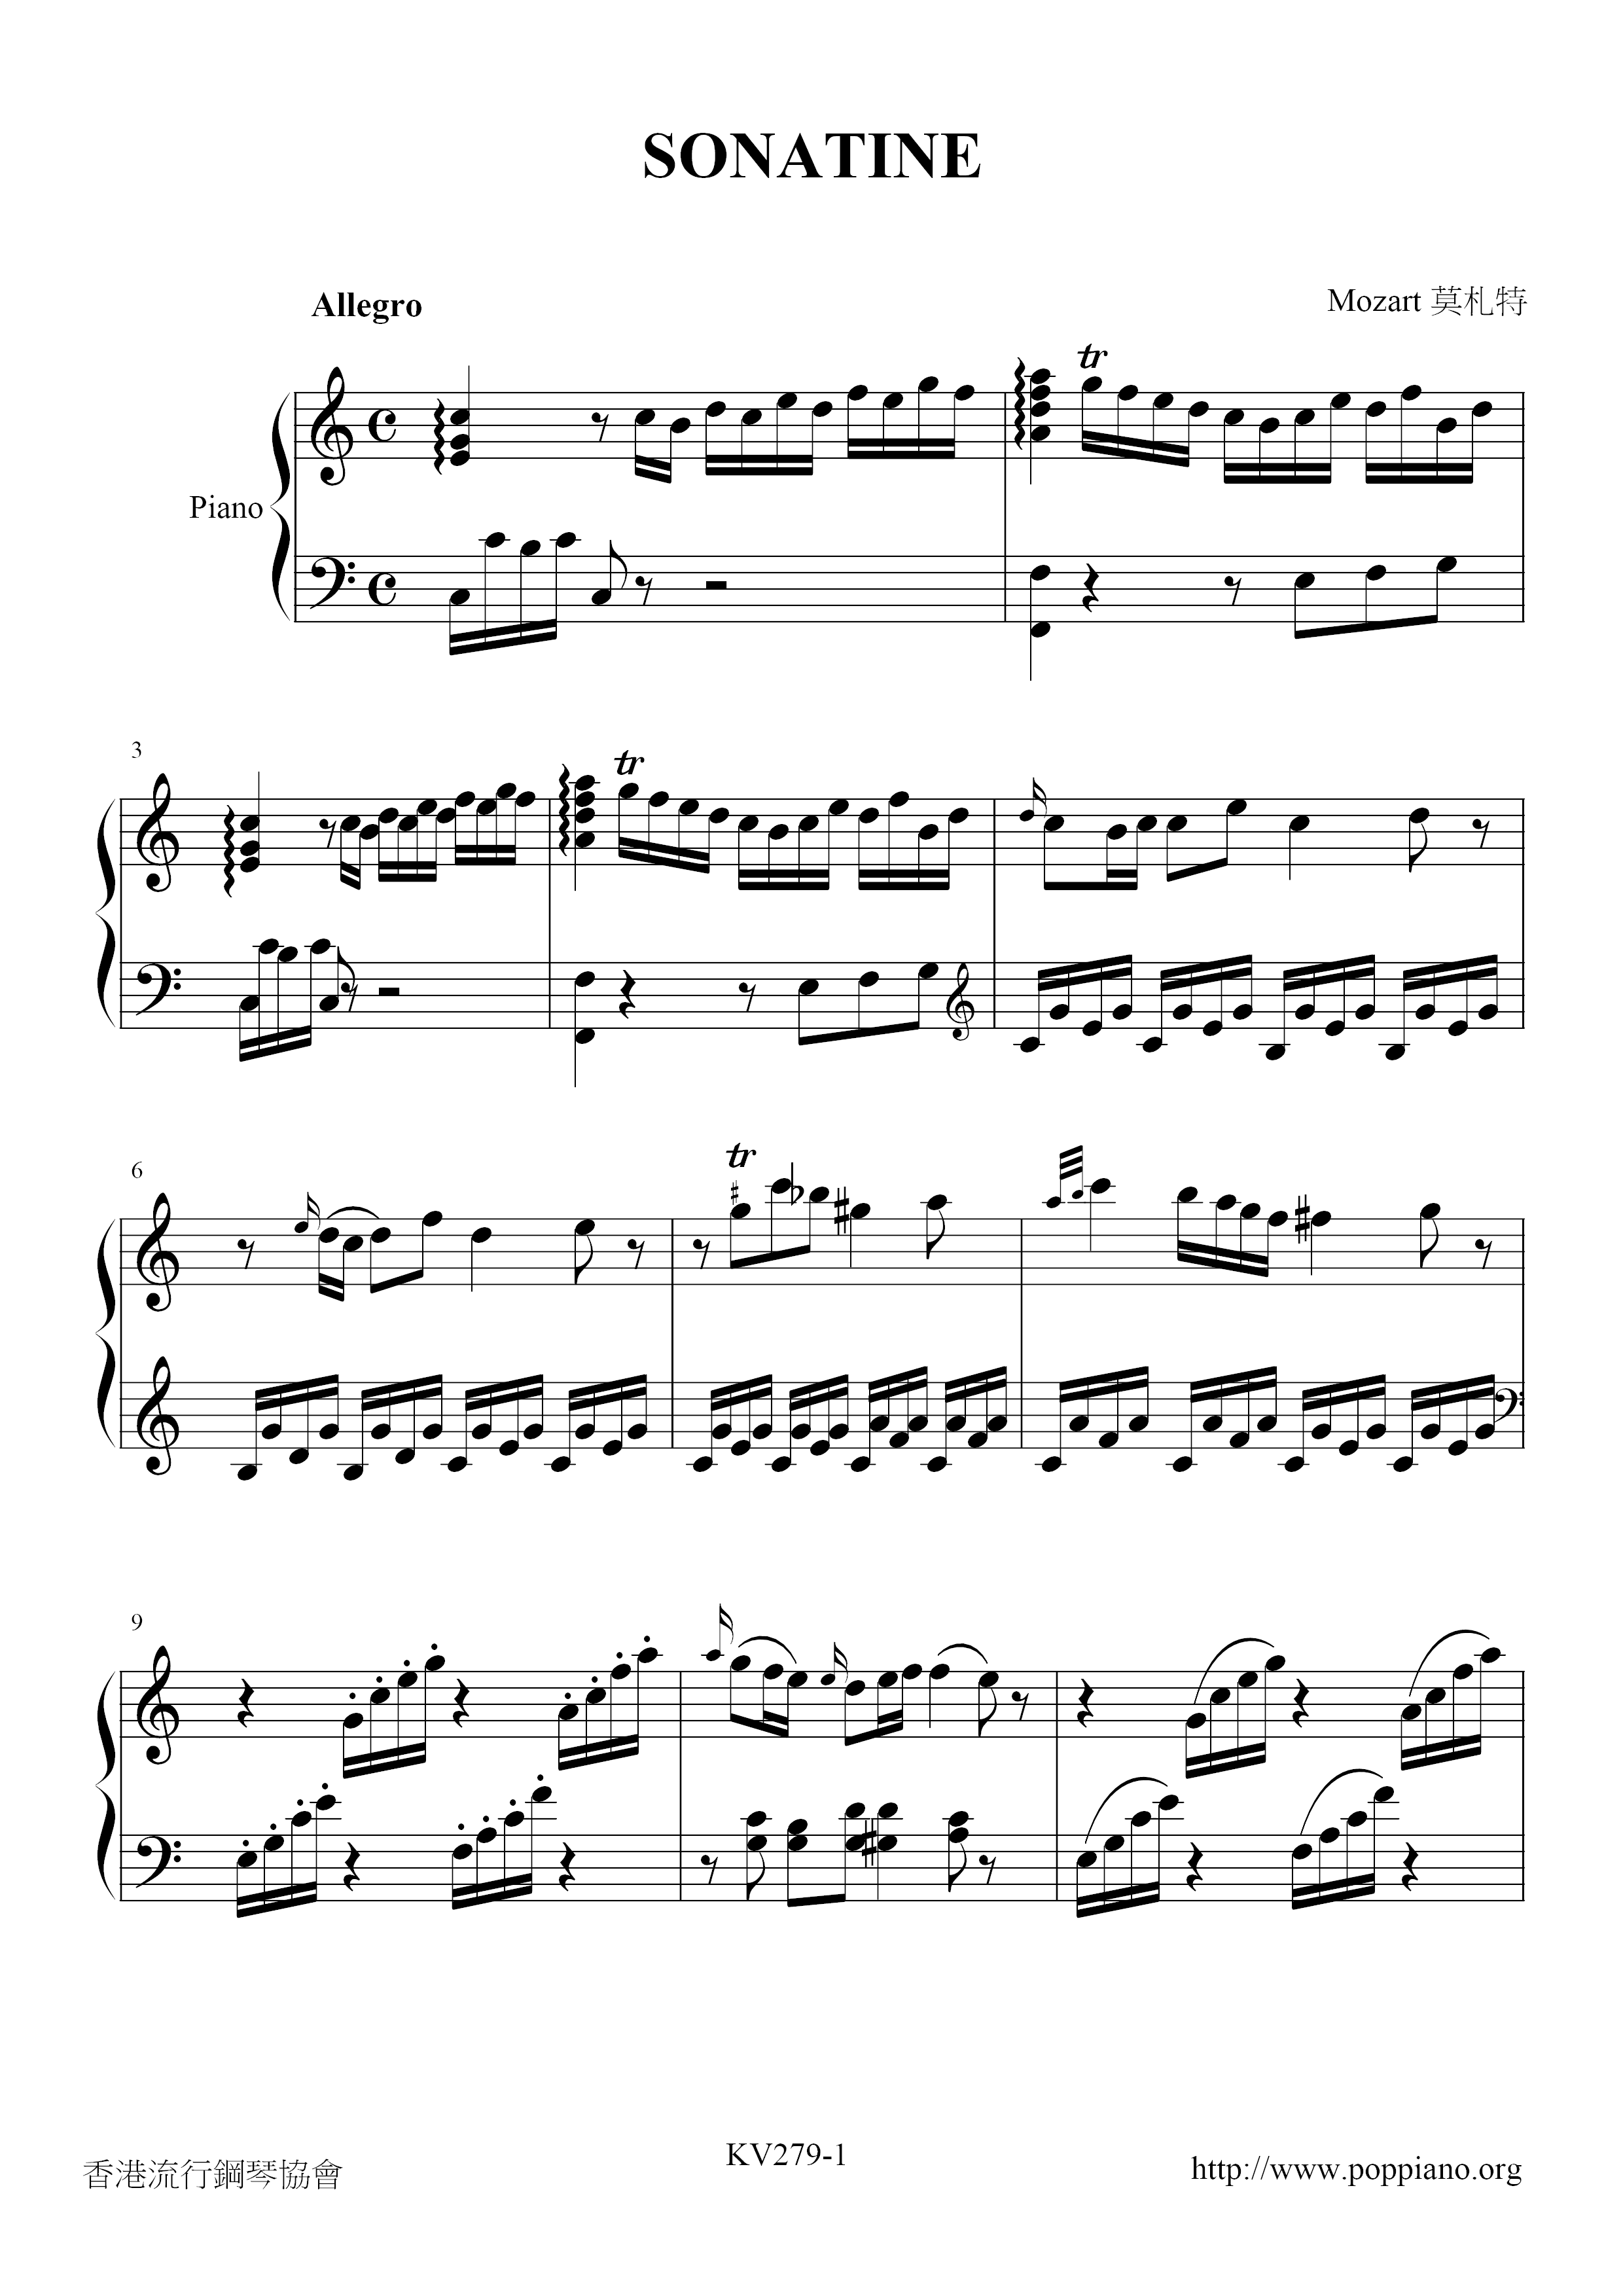 Piano Sonata in C major, K. 279 Score